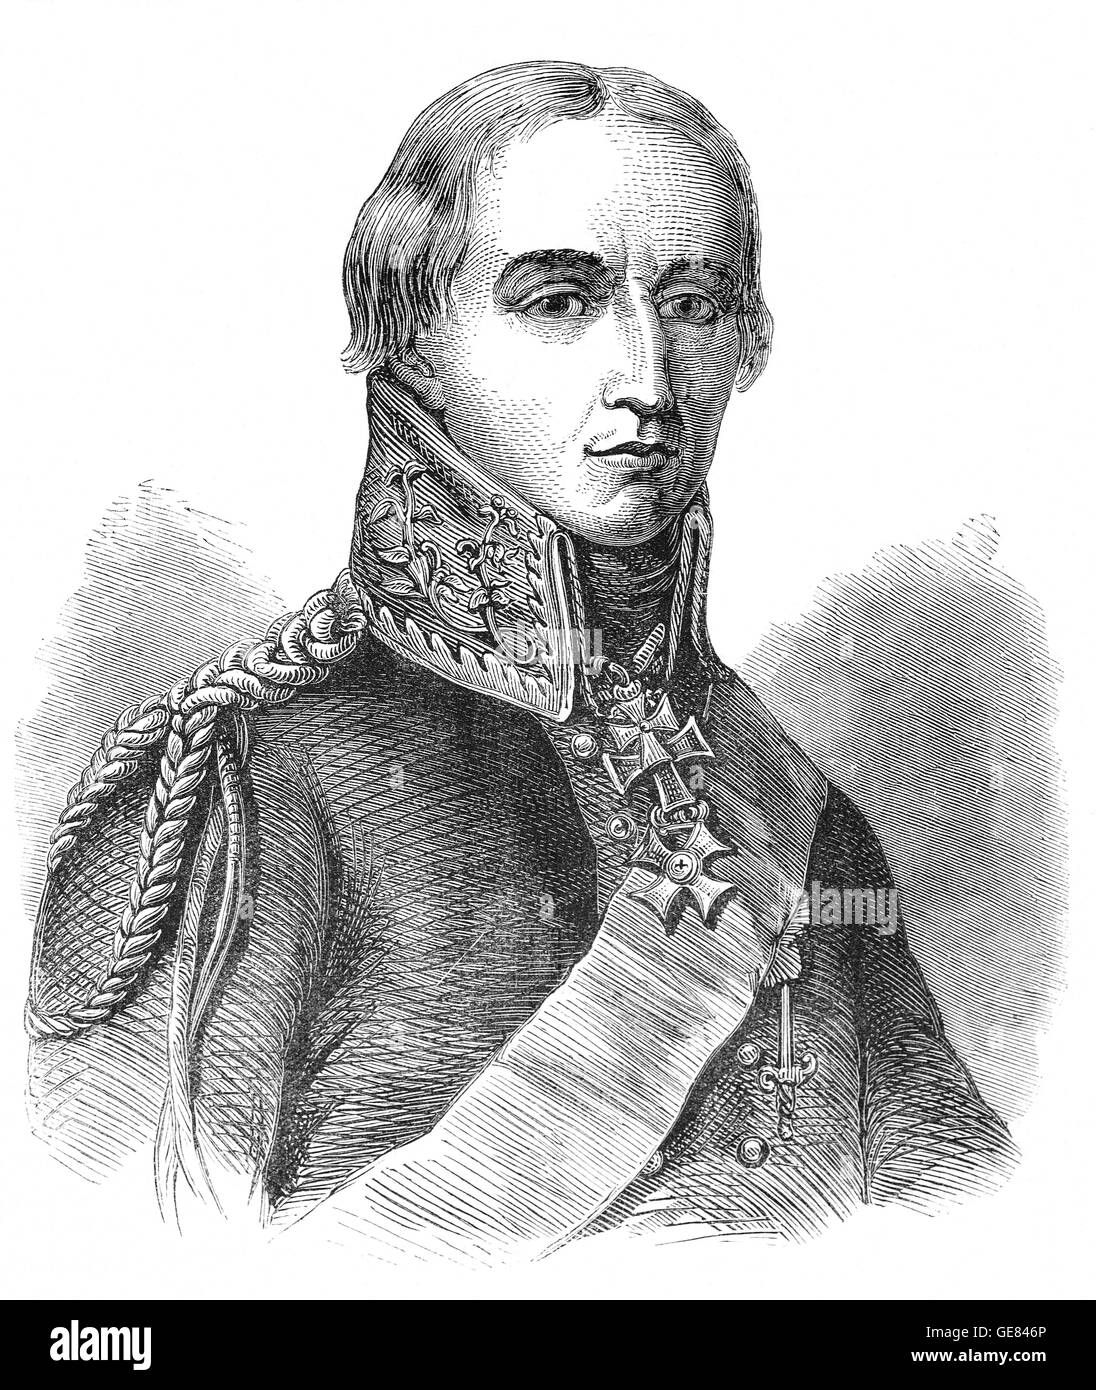 Friedrich Wilhelm Freiherr oder Marschall Bulow (1755 – 1816) war ein preußischer General, der die Briten während der napoleonischen Kriege unterstützt. Seine Armee eine auffällige Rolle gespielt in den endgültigen Sturz Napoleons in Leipzig, und dann wurde er betraut mit der Aufgabe, vertreiben die Franzosen aus Holland und Belgien. Stockfoto